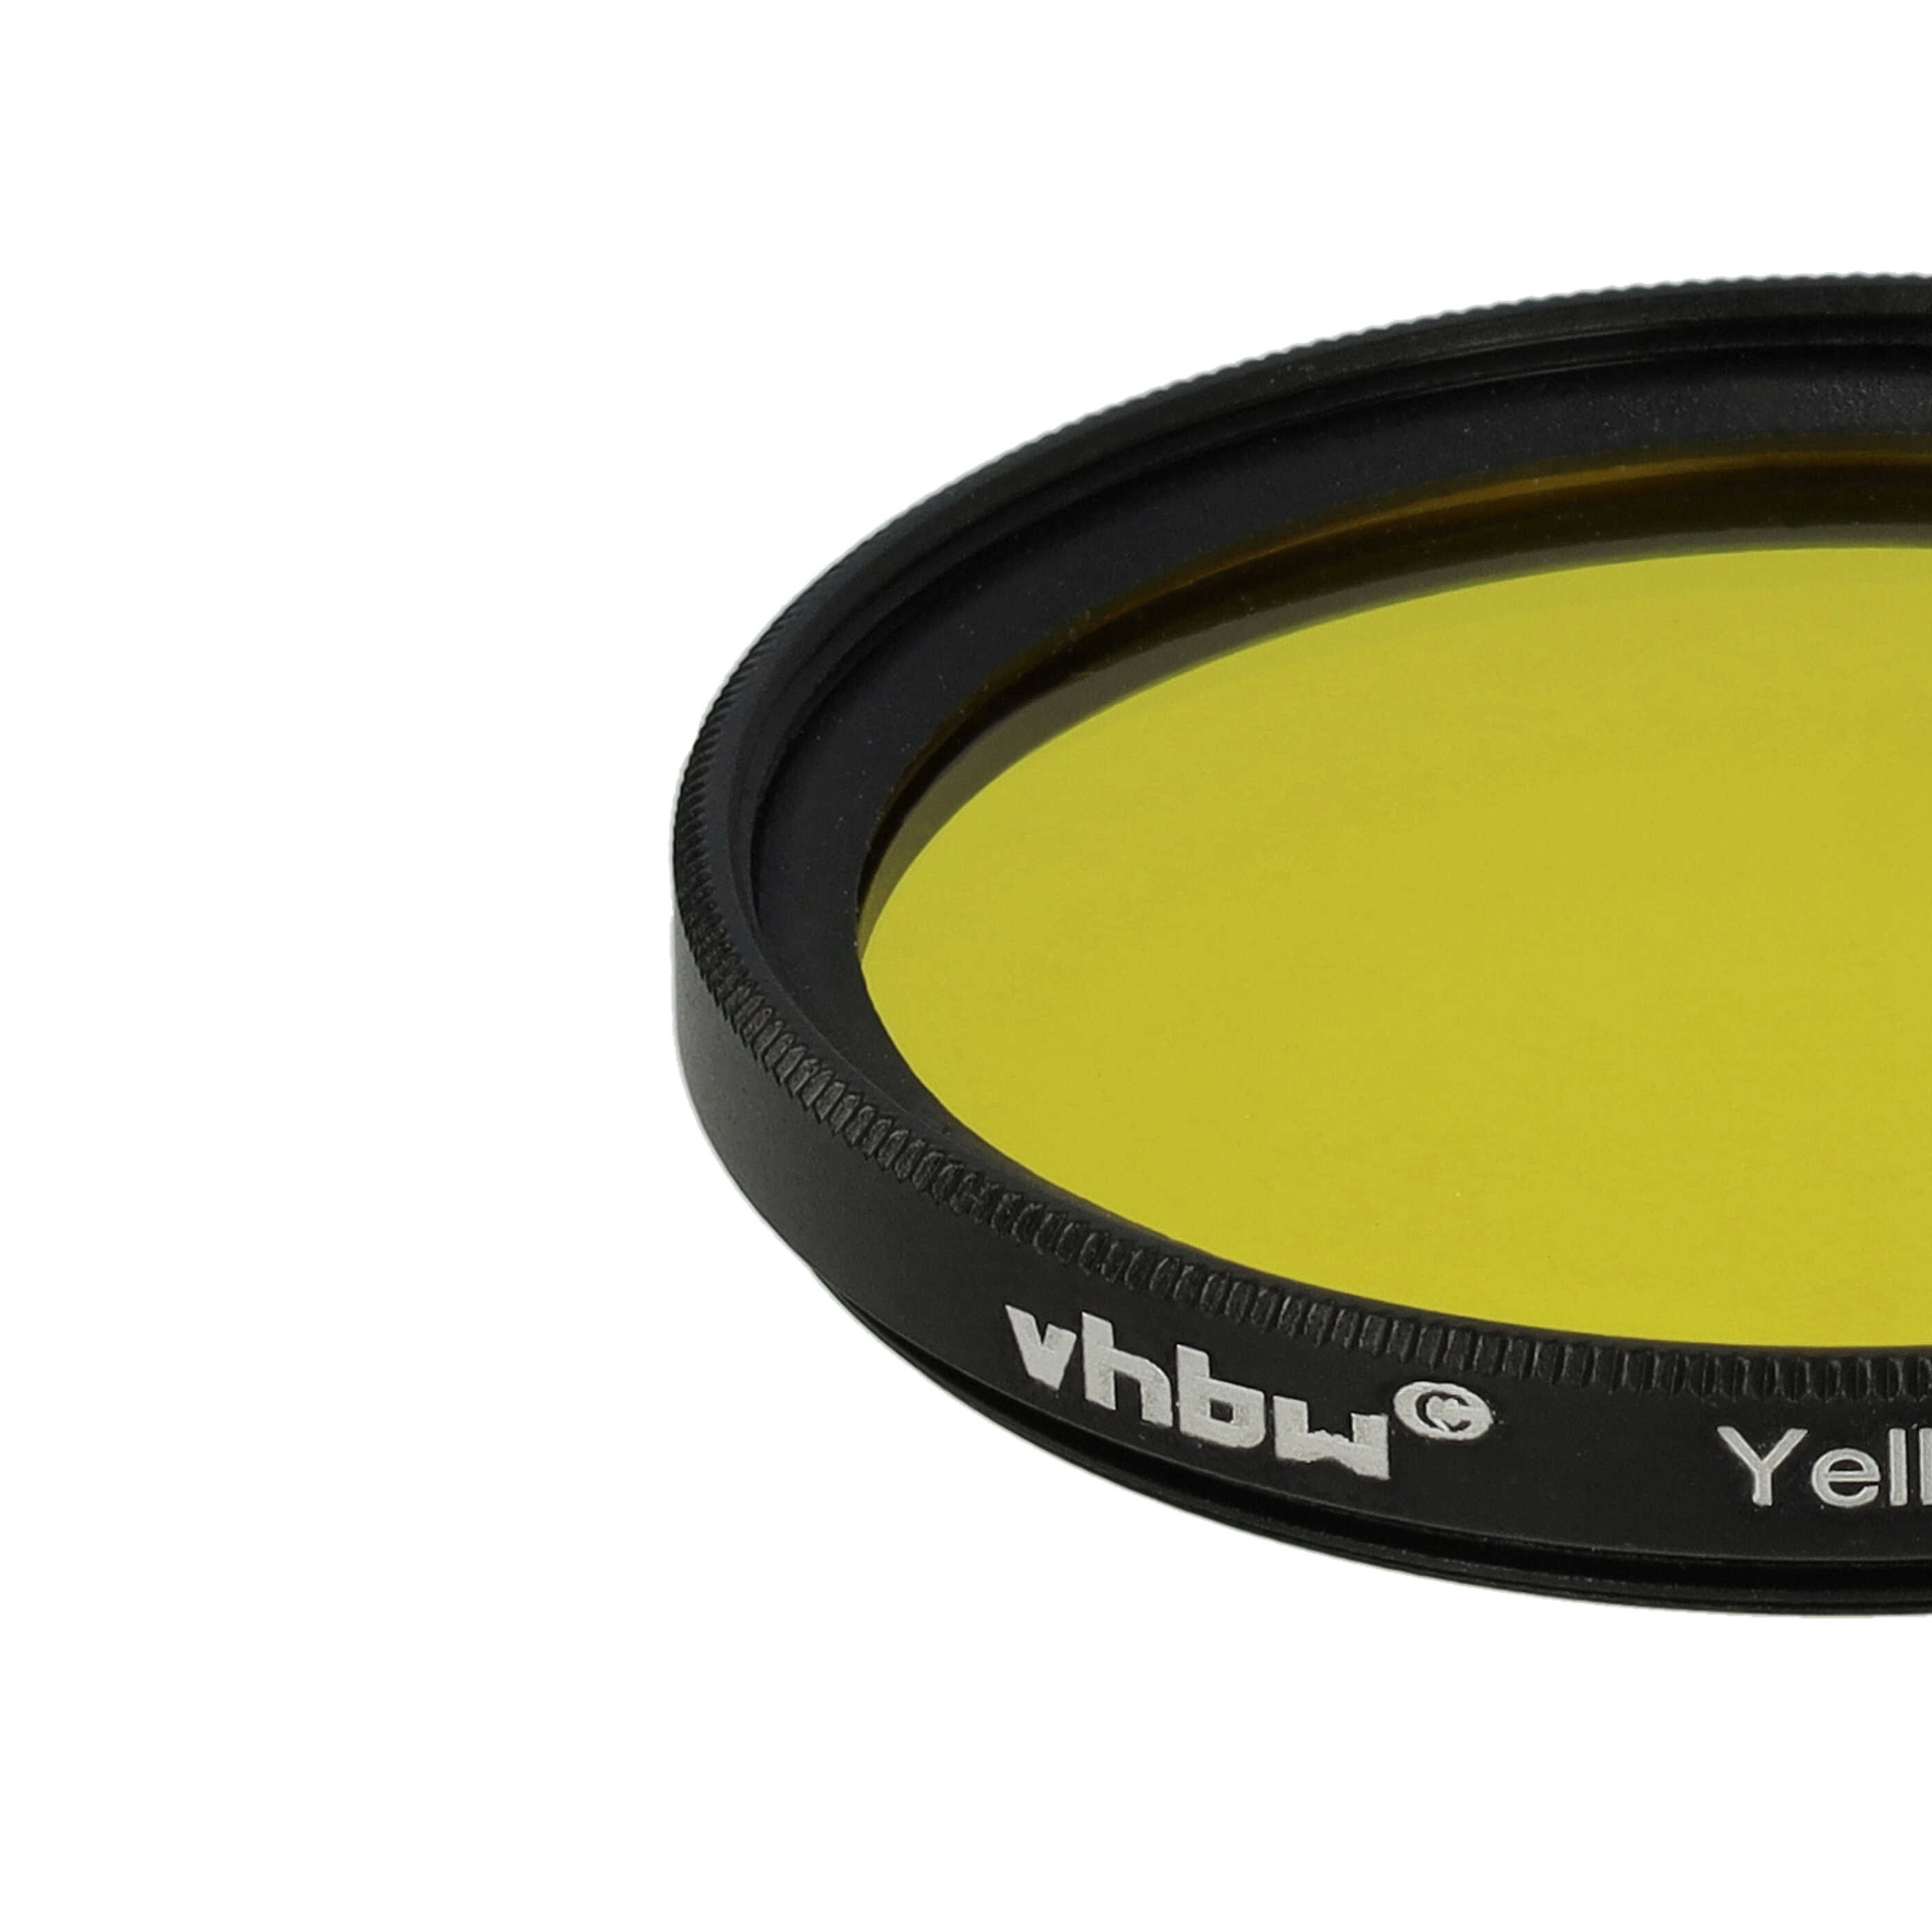 Filtro colorato per obiettivi fotocamera con filettatura da 46 mm - filtro giallo